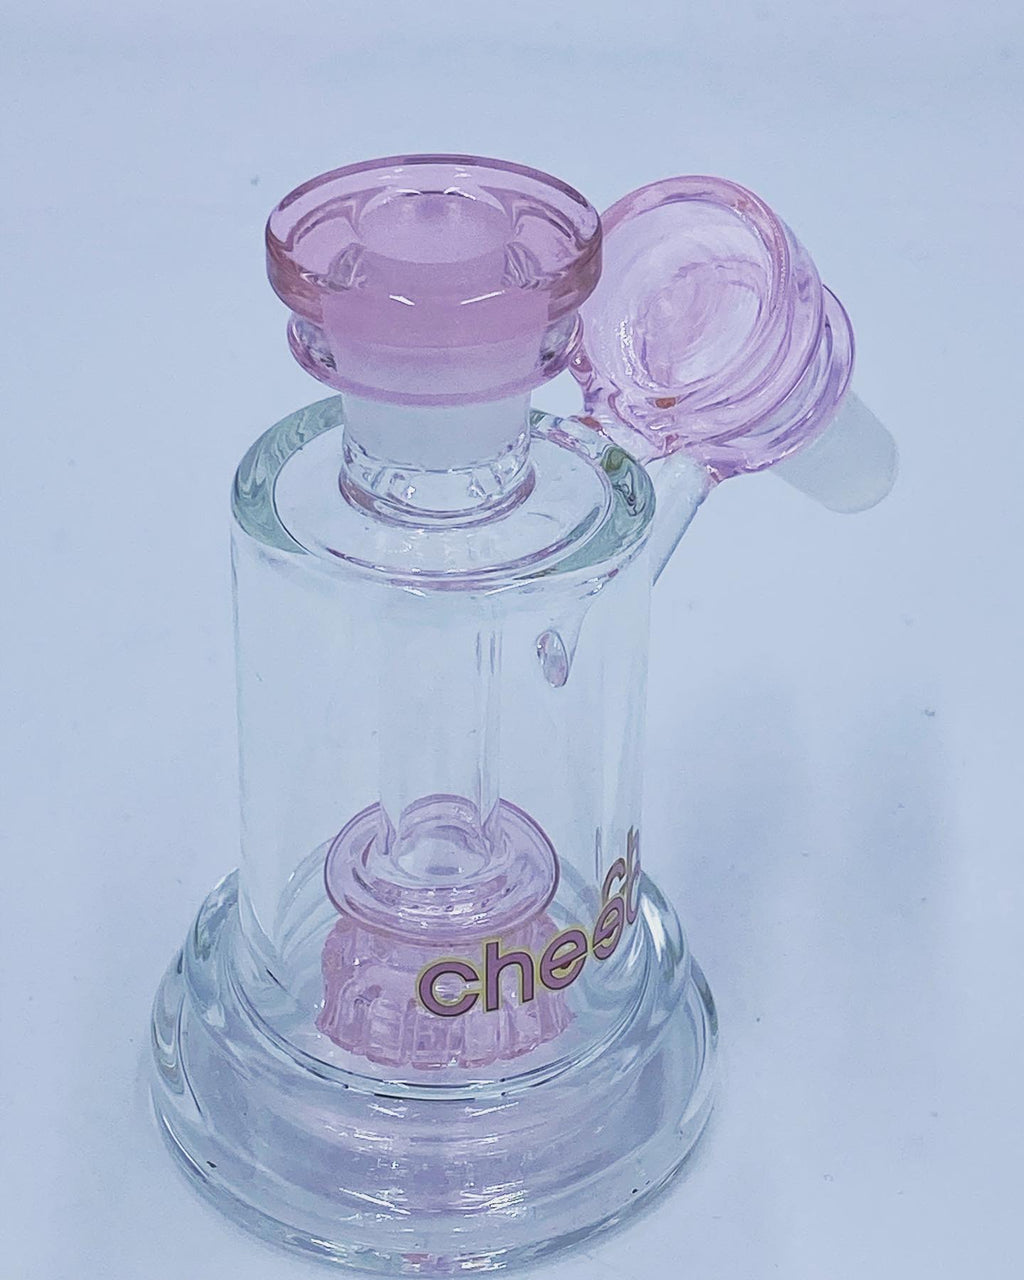 Cheech Glass Pink Ash Catcher